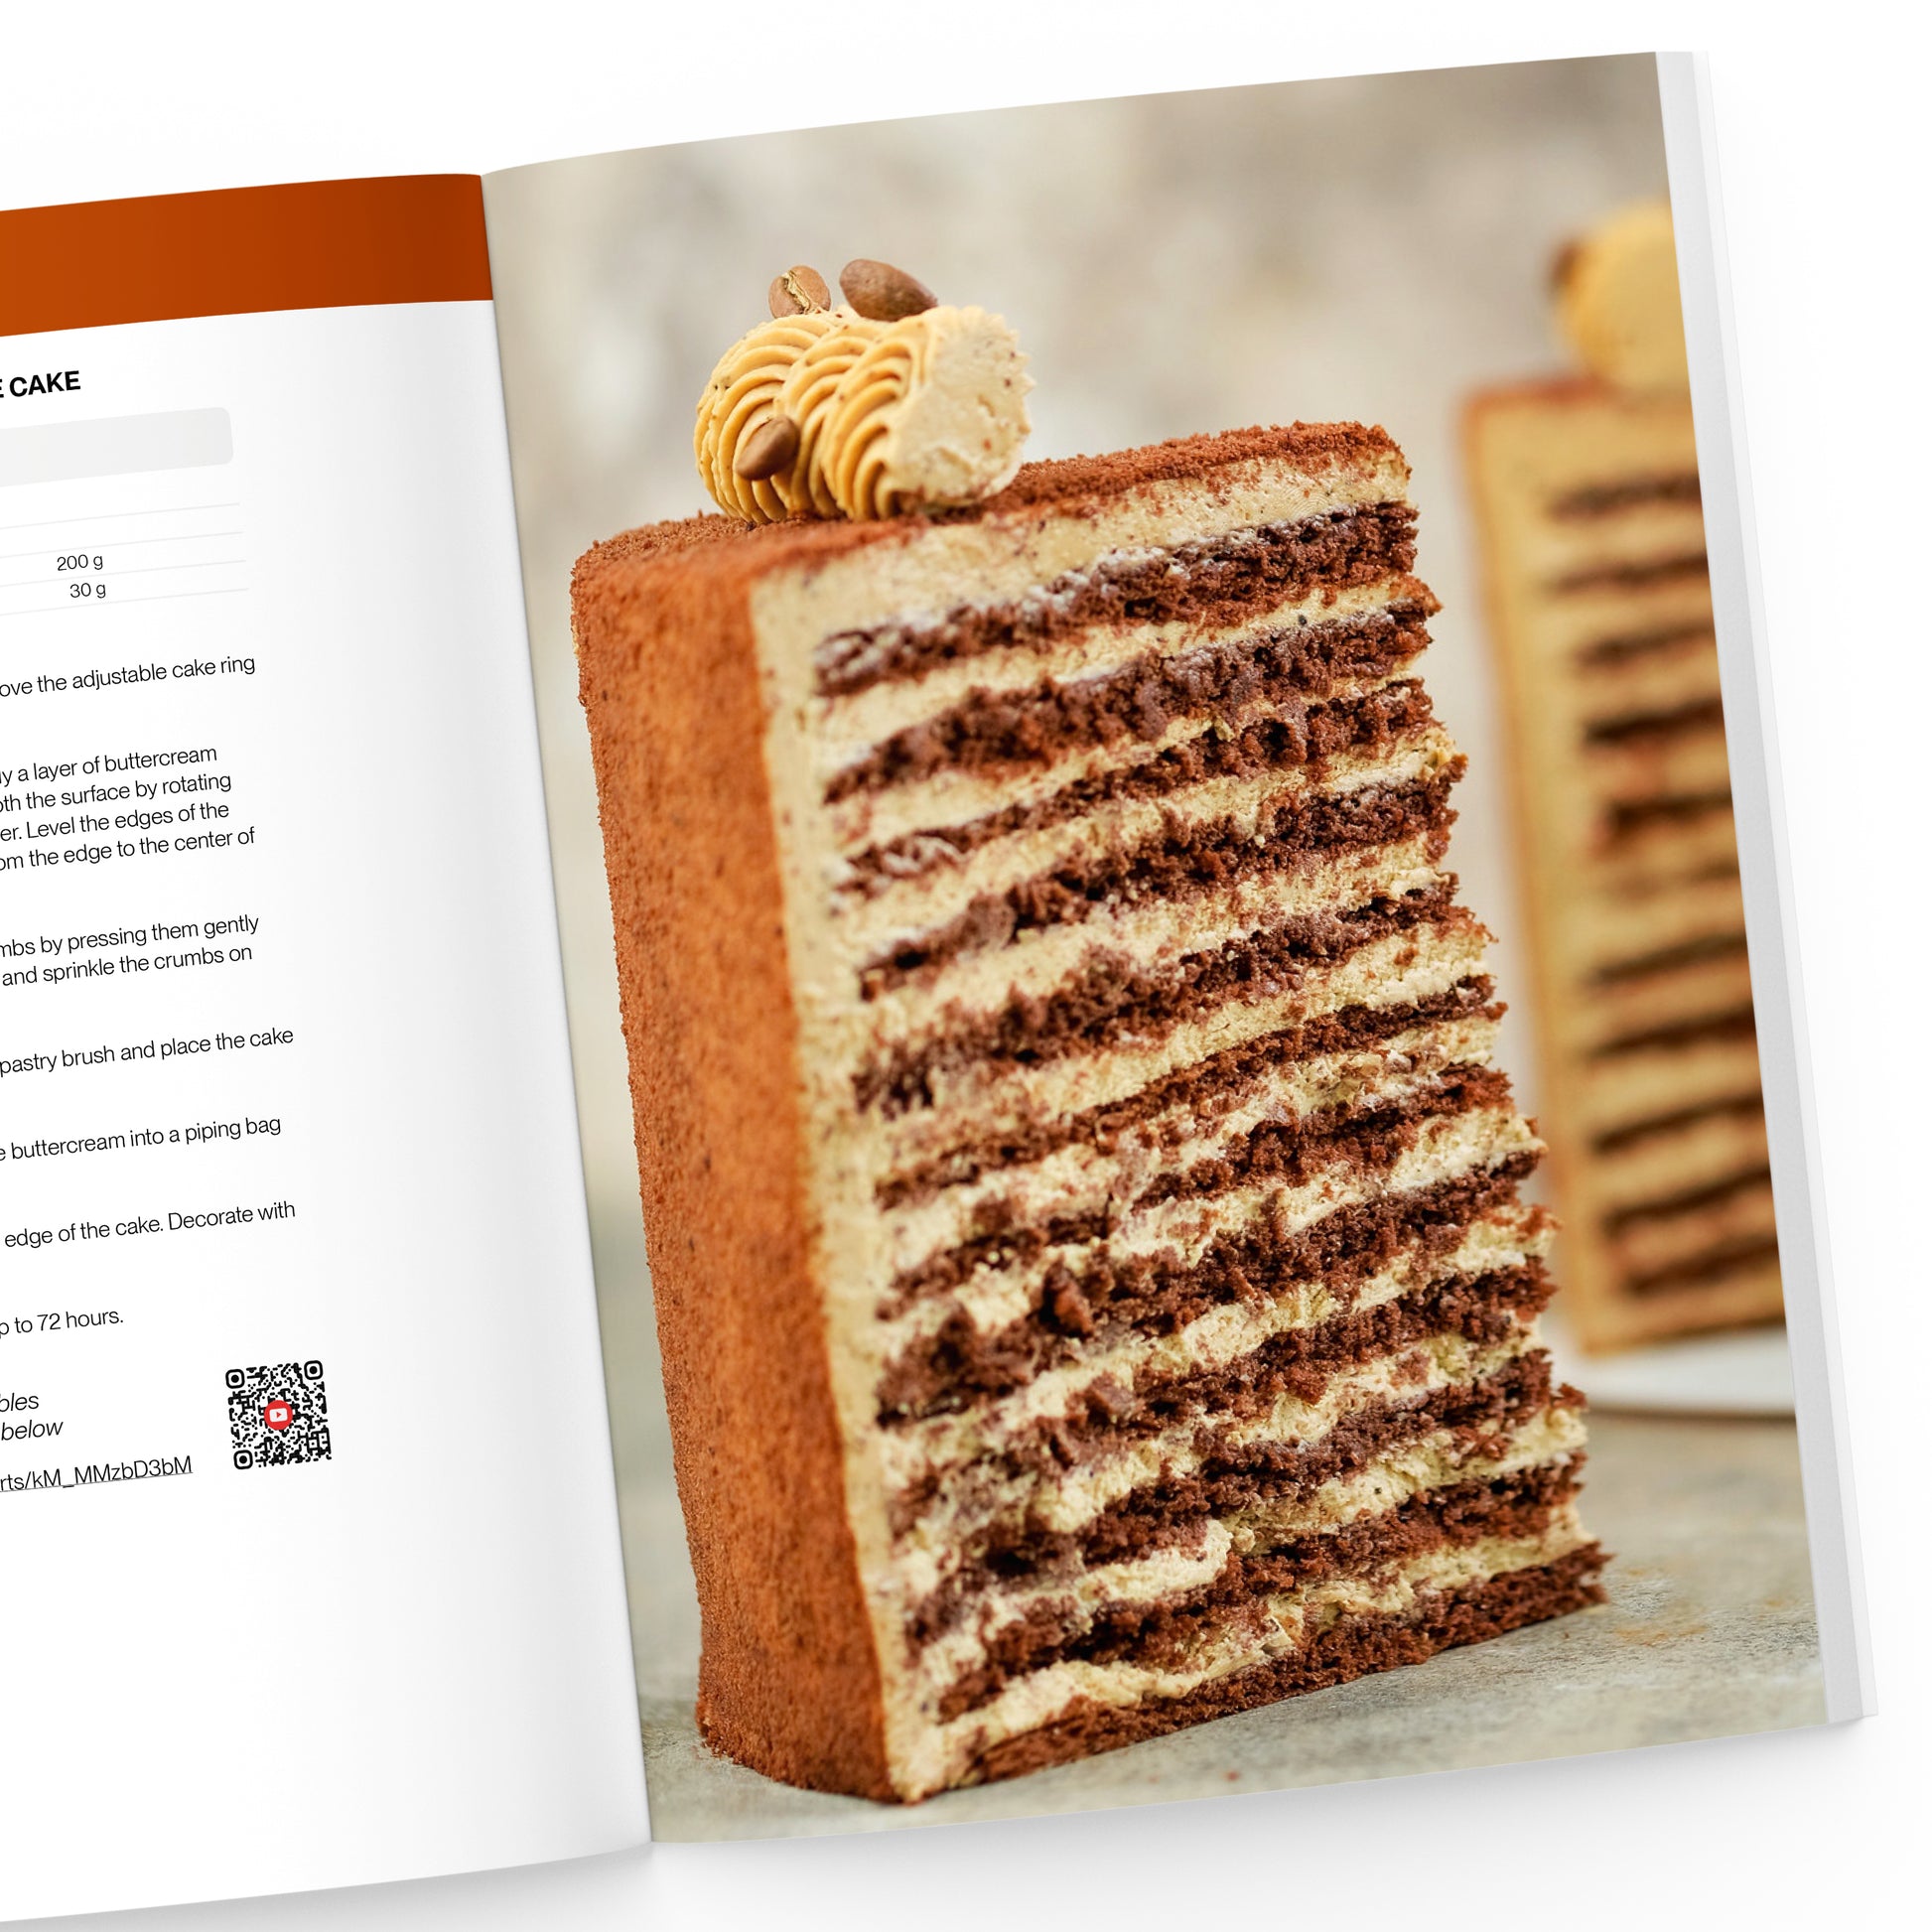 The Honey Cake Book